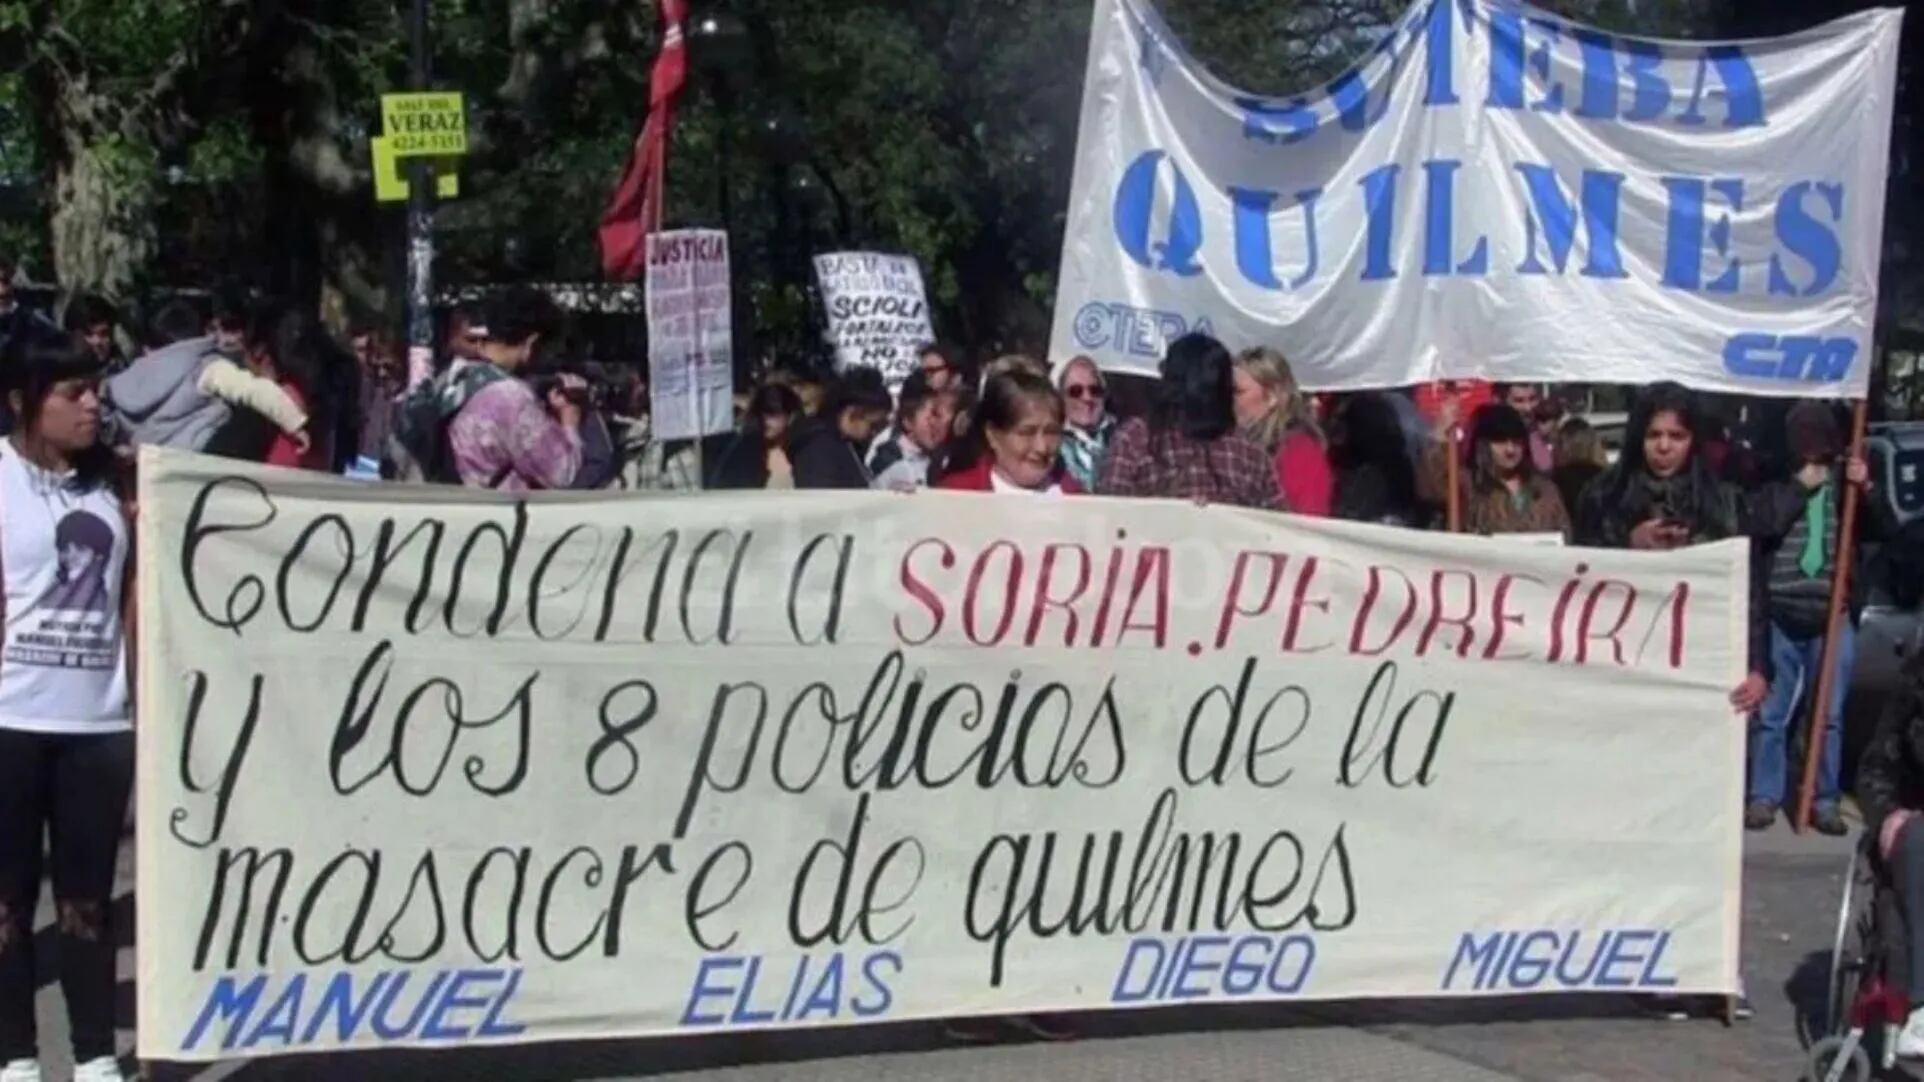 Masacre de Quilmes: uno de los policías acusados rompió 100 veces el arresto domiciliario y le dieron libertad condicional